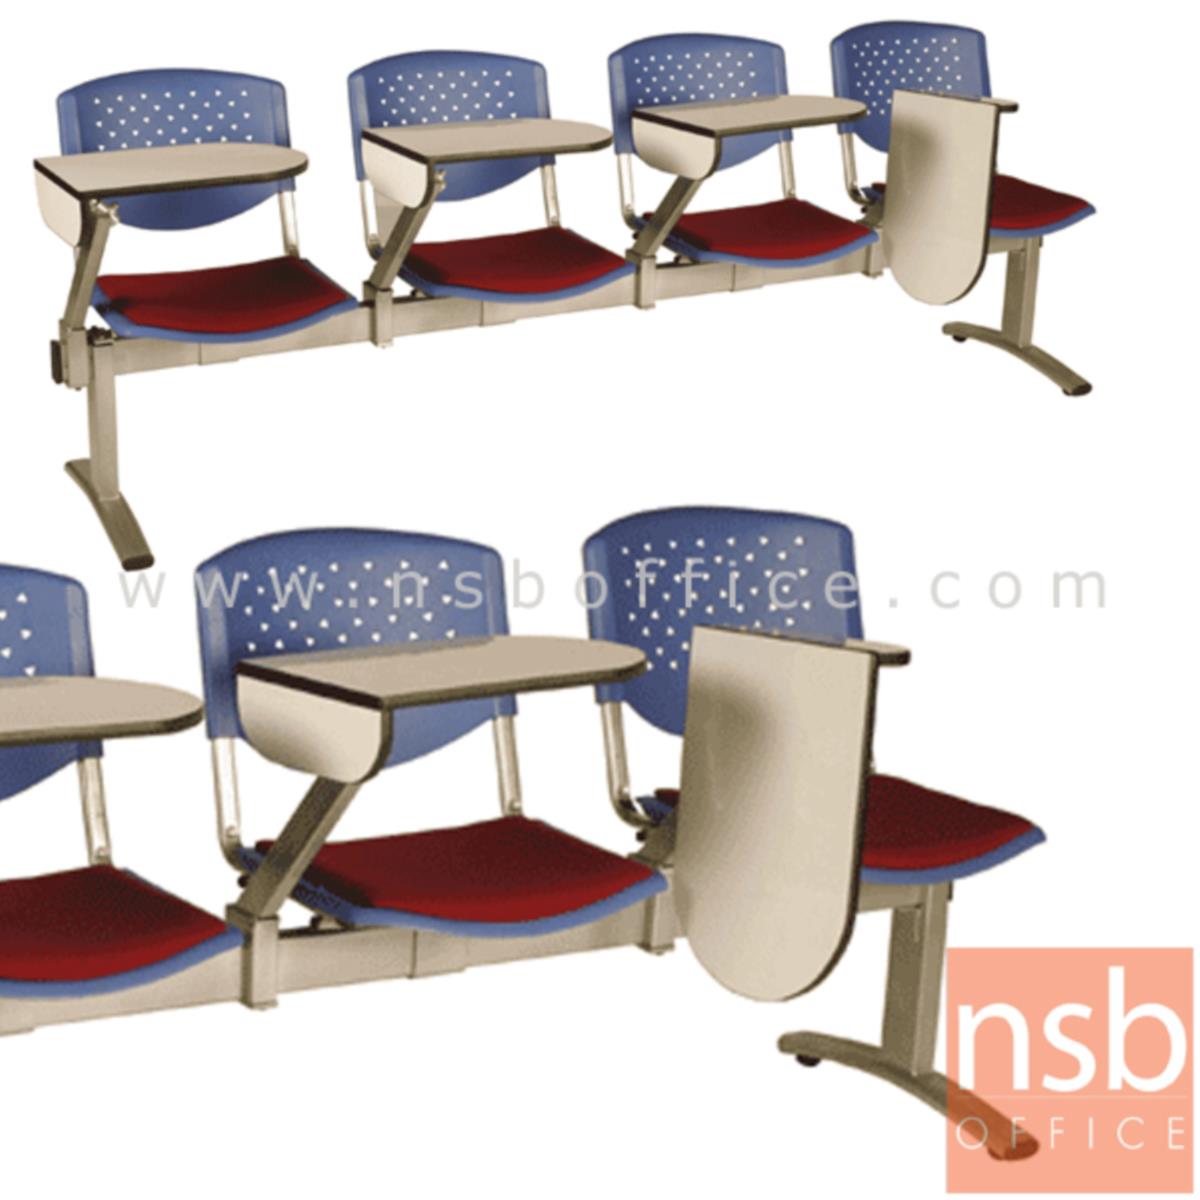 B17A018:เก้าอี้เลคเชอร์แถวเฟรมโพลี่หุ้มเบาะ รุ่น D936 2 ,3 และ 4 ที่นั่ง ขาเหล็กพ่นสีเทา